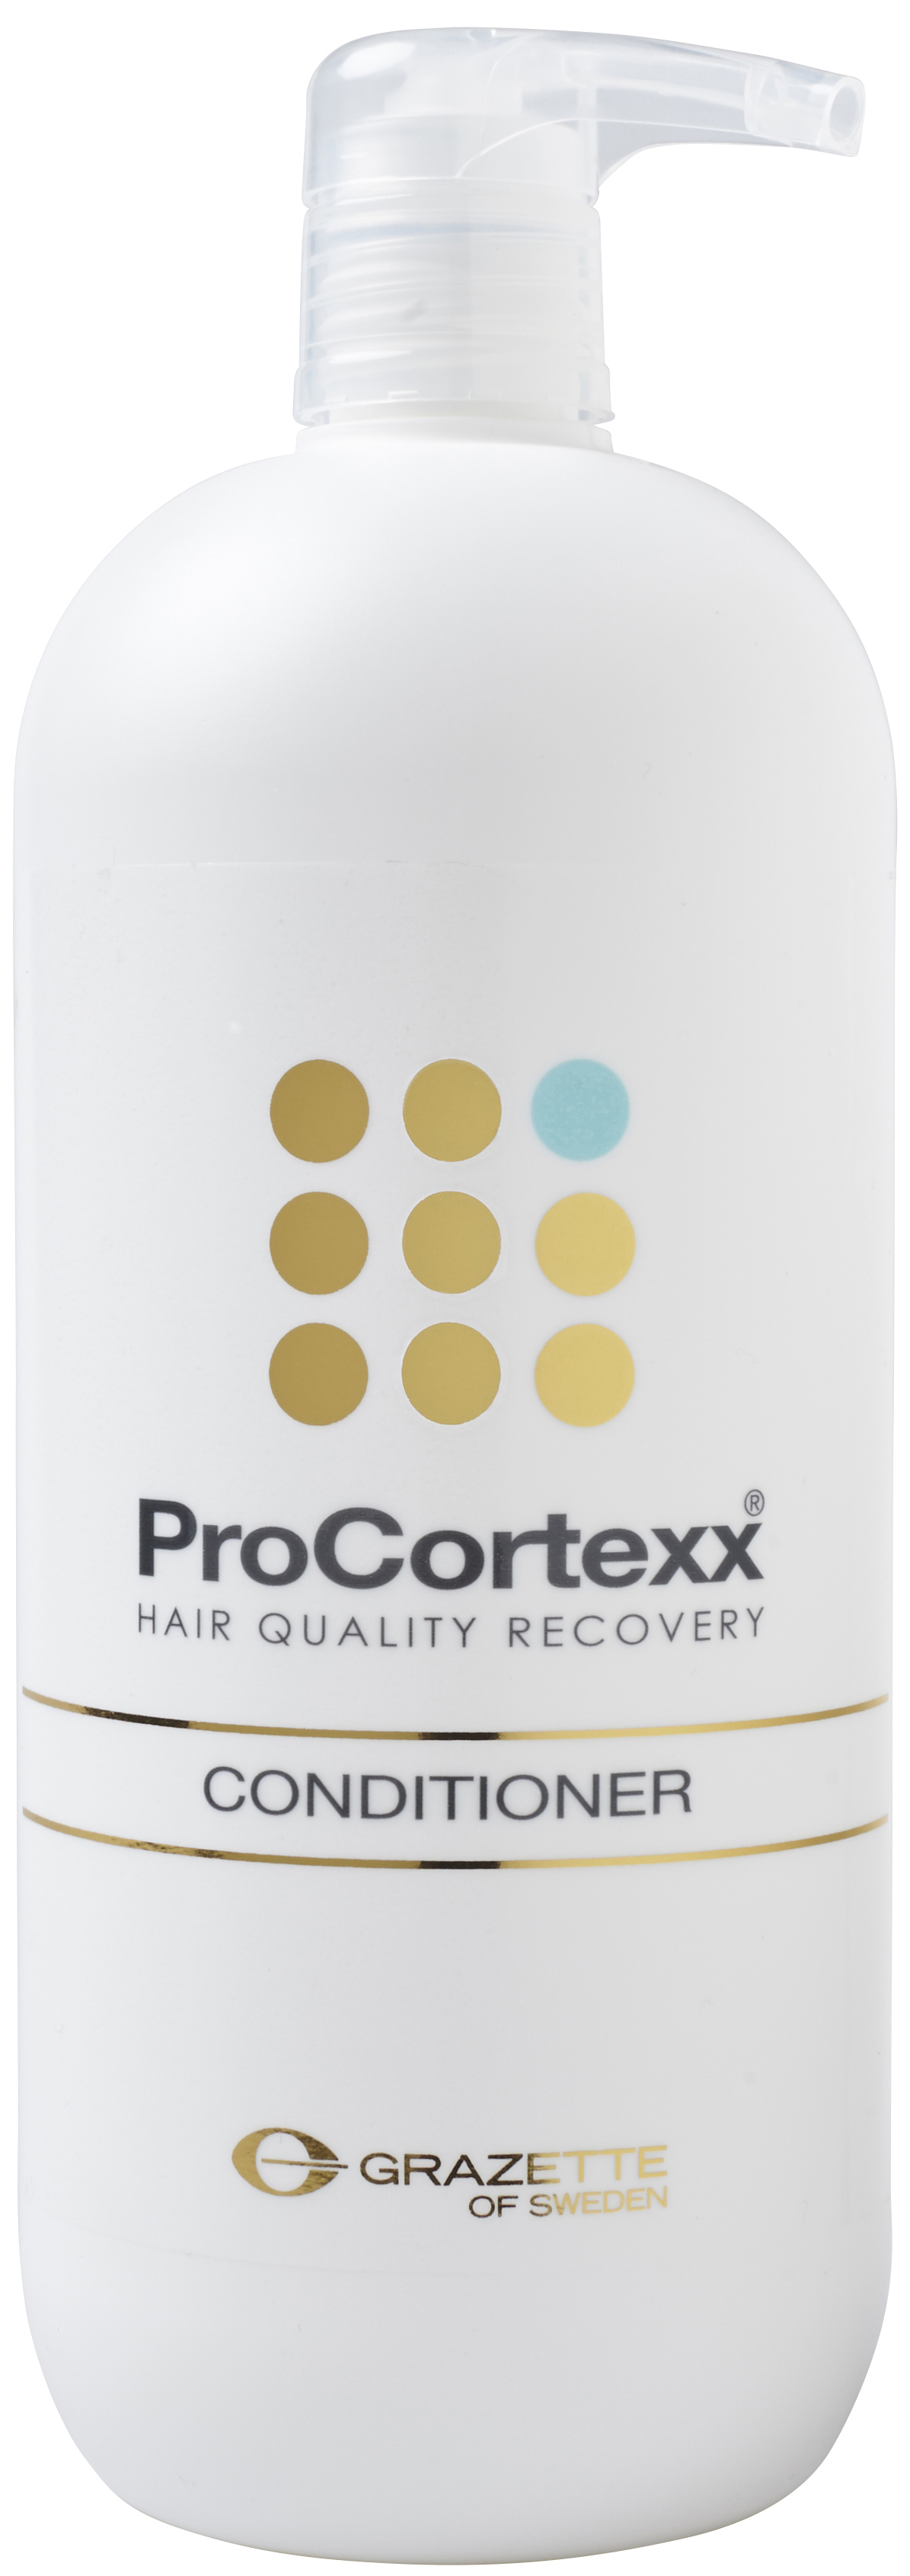 Grazette ProCortexx Conditioner 1000ml